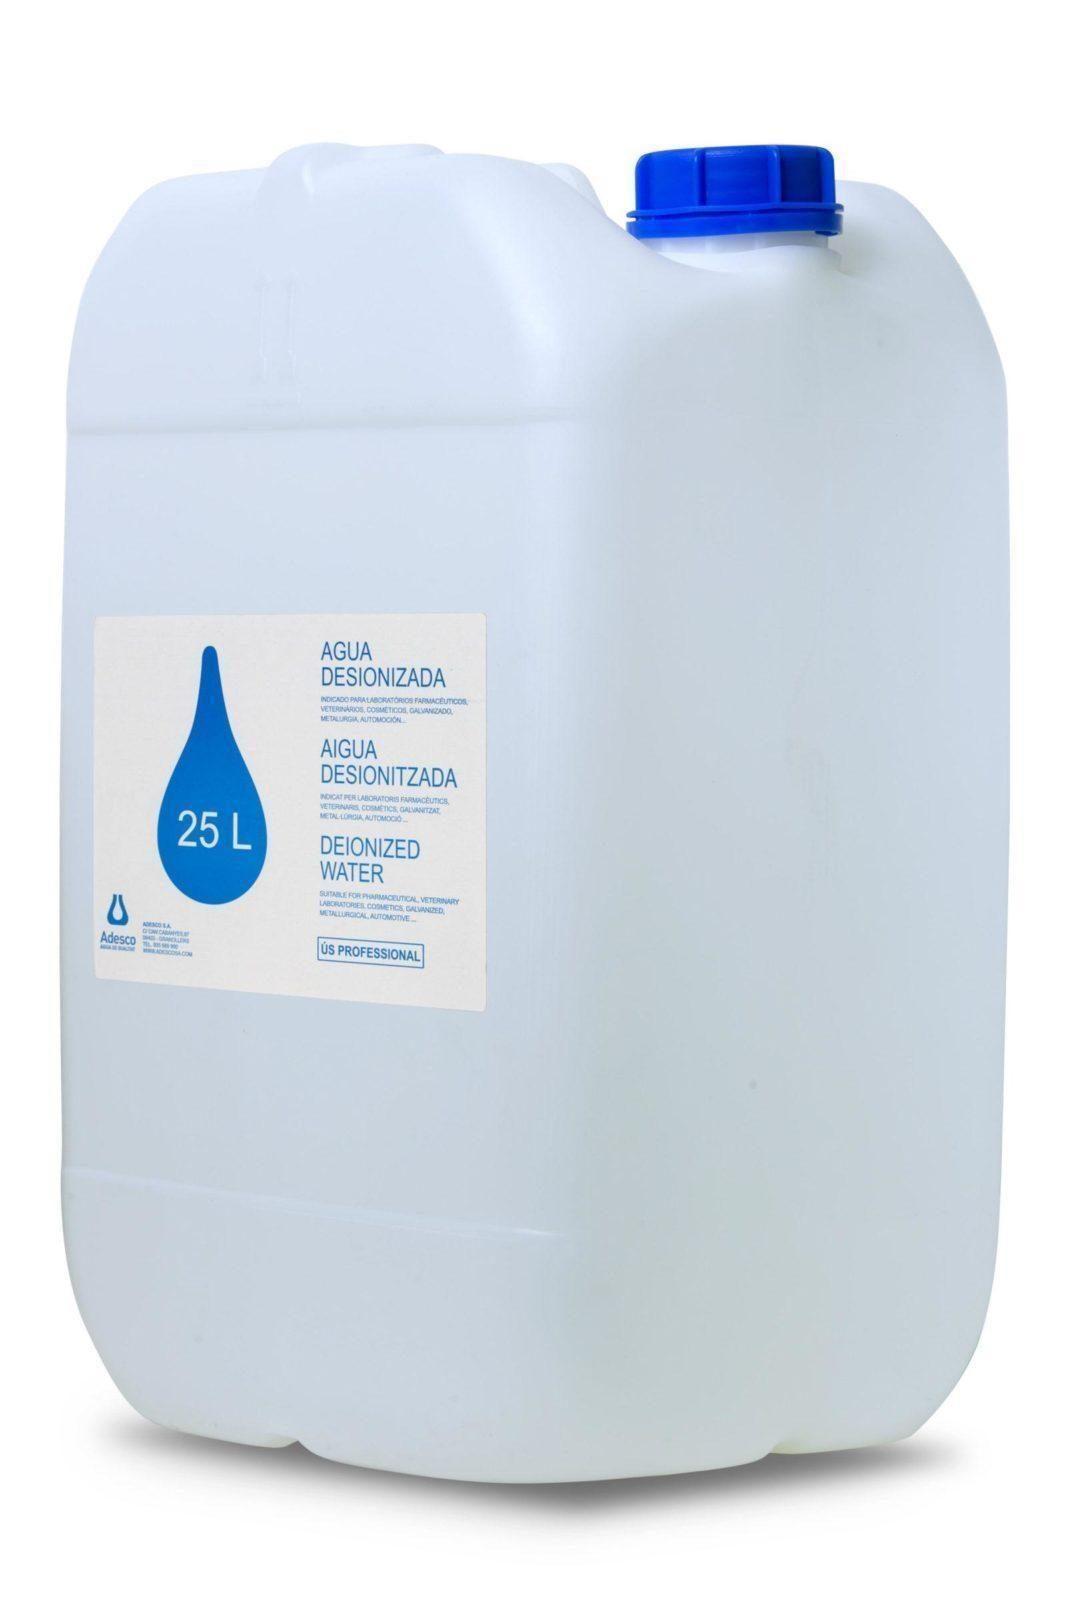 Garrafa de Agua destilada 25 Litros